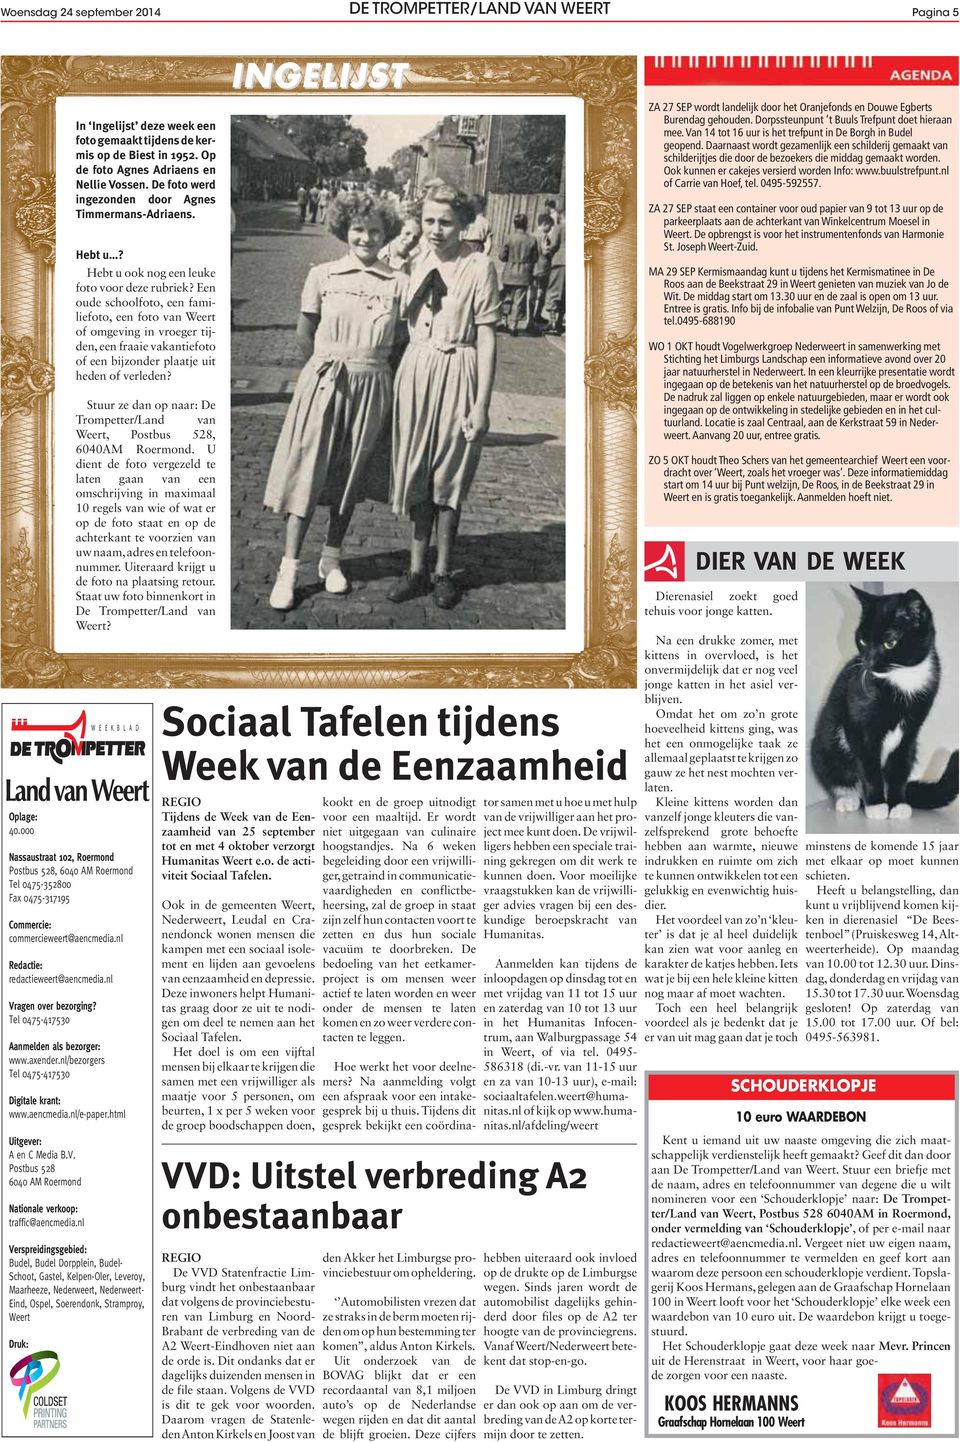 html Uitgever: A en C Media B.V. Postbus 528 6040 AM Roermond Nationale verkoop: traffic@aencmedia.